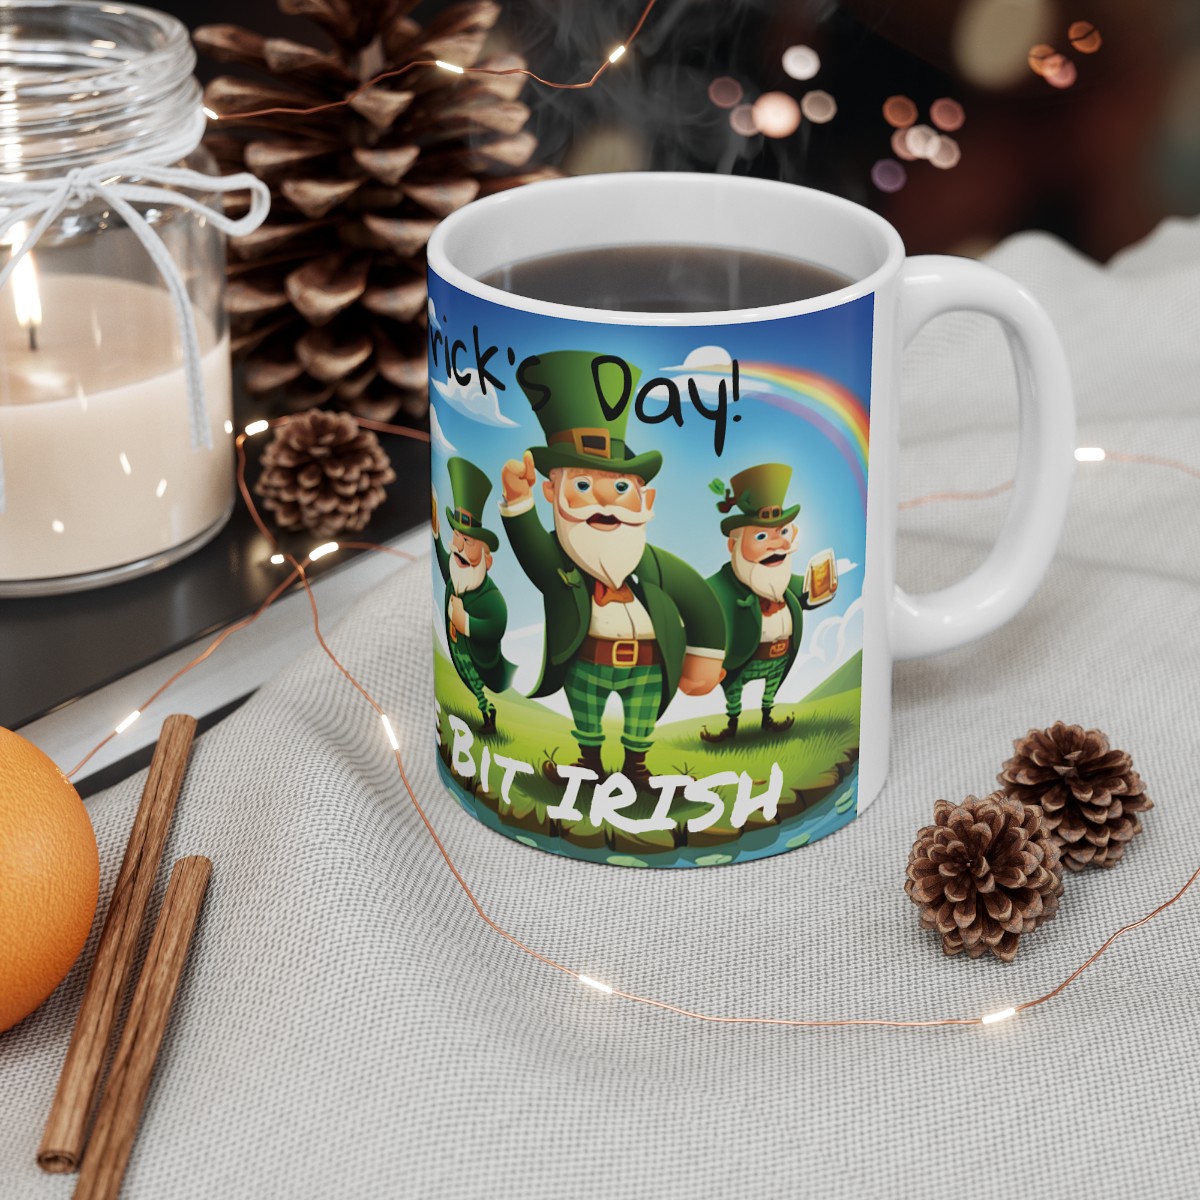 Happy St Patrick's Day, Proudly a Wee Bit Irish!  - Ceramic Mug 11oz product thumbnail image